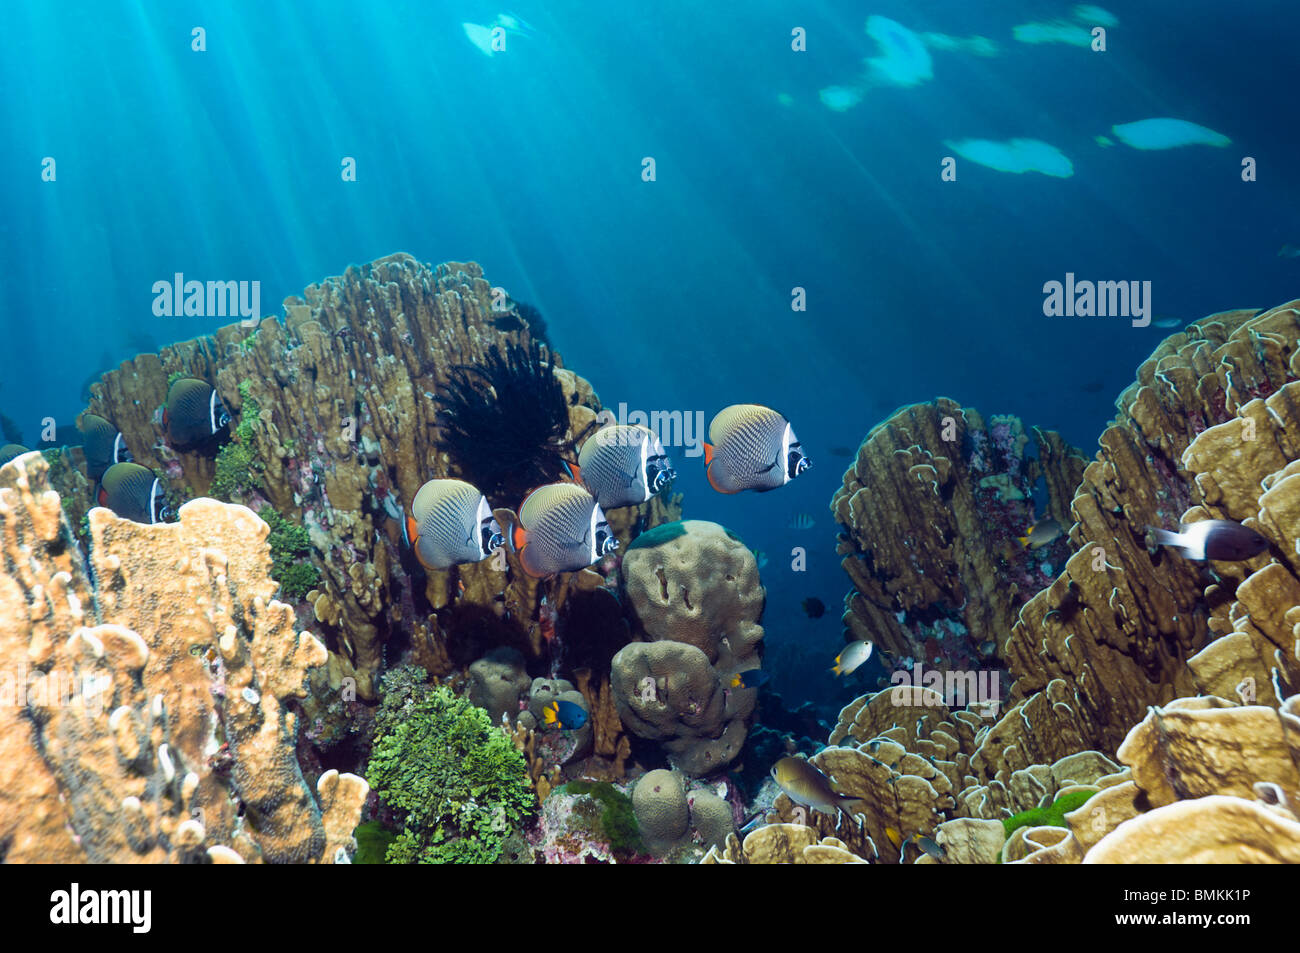 Rotschwanzboa oder Halsband Butterflyfish schwimmen über Blue Coral, ist ein lebendes Fossil.  Andamanensee, Thailand. Stockfoto